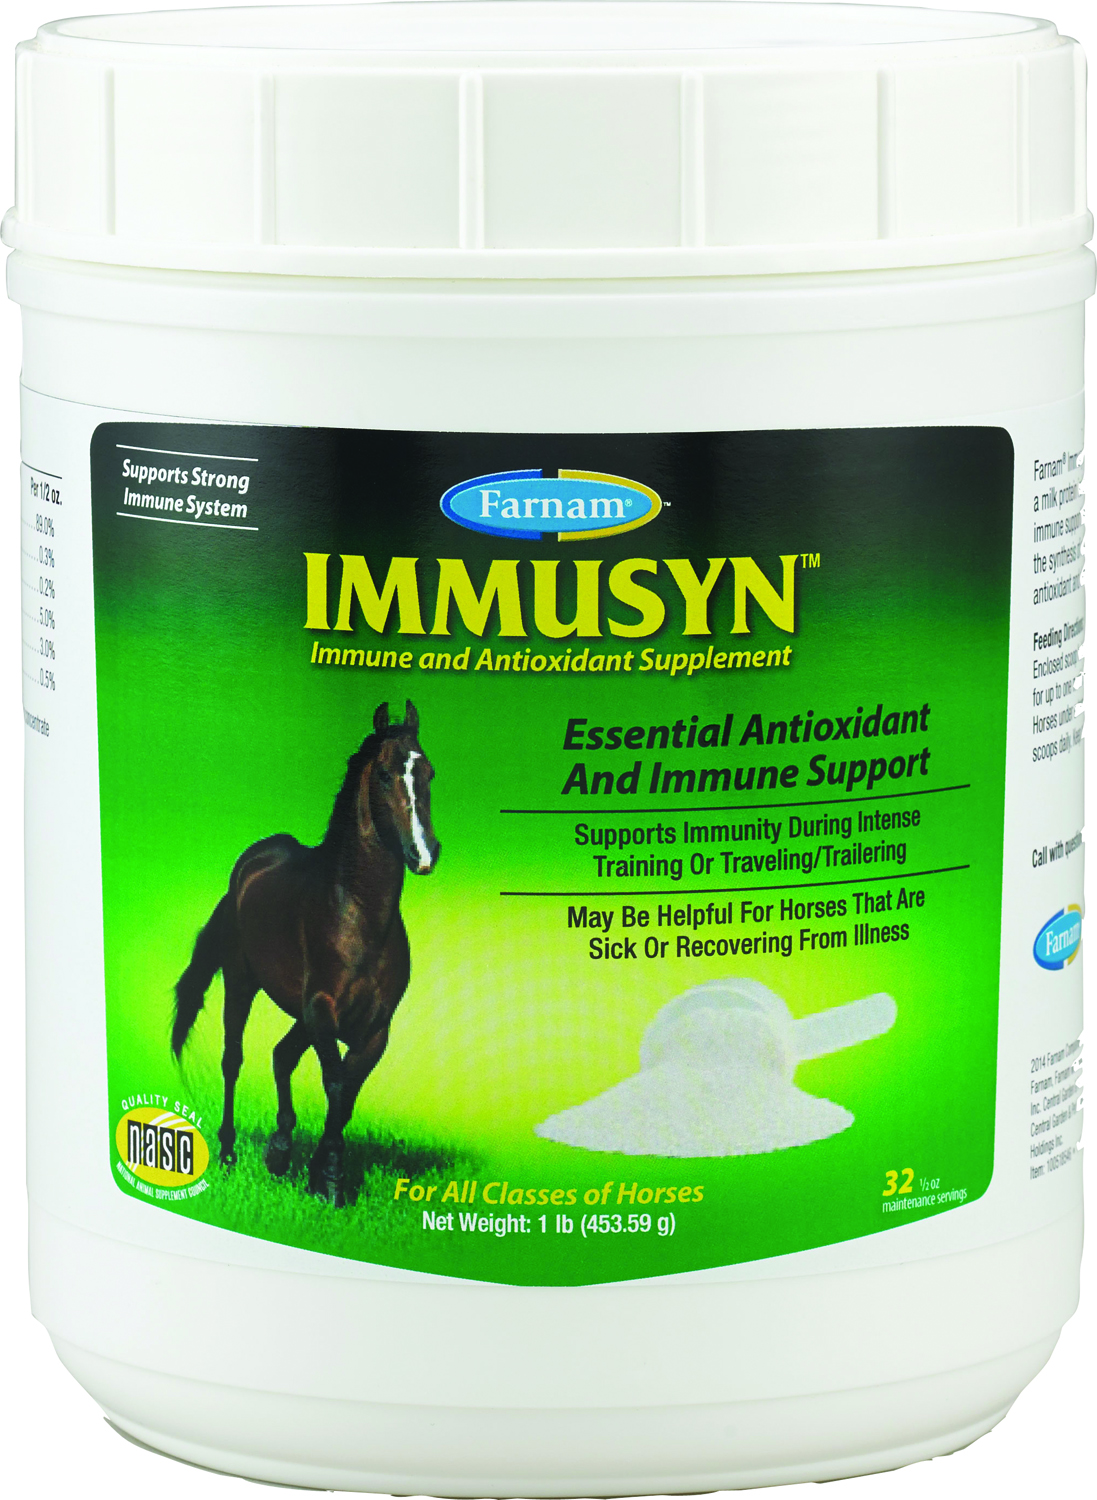 IMMUSYN IMMUNE & ANTIOXIDANT SUPPLEMENT FOR HORSES